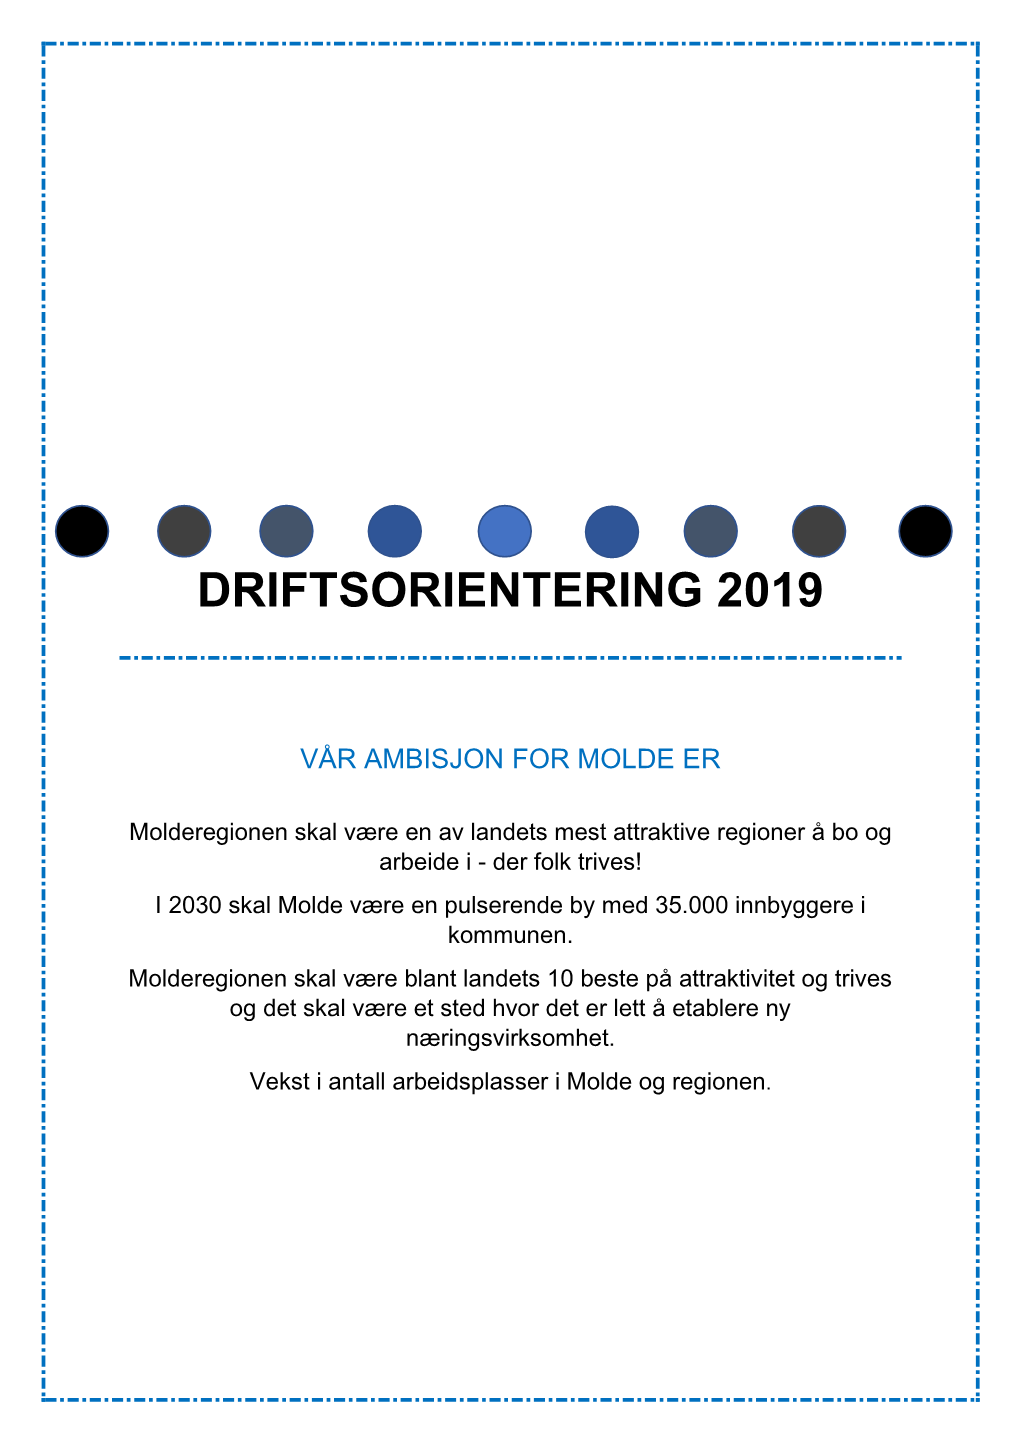 Driftsorientering 2019